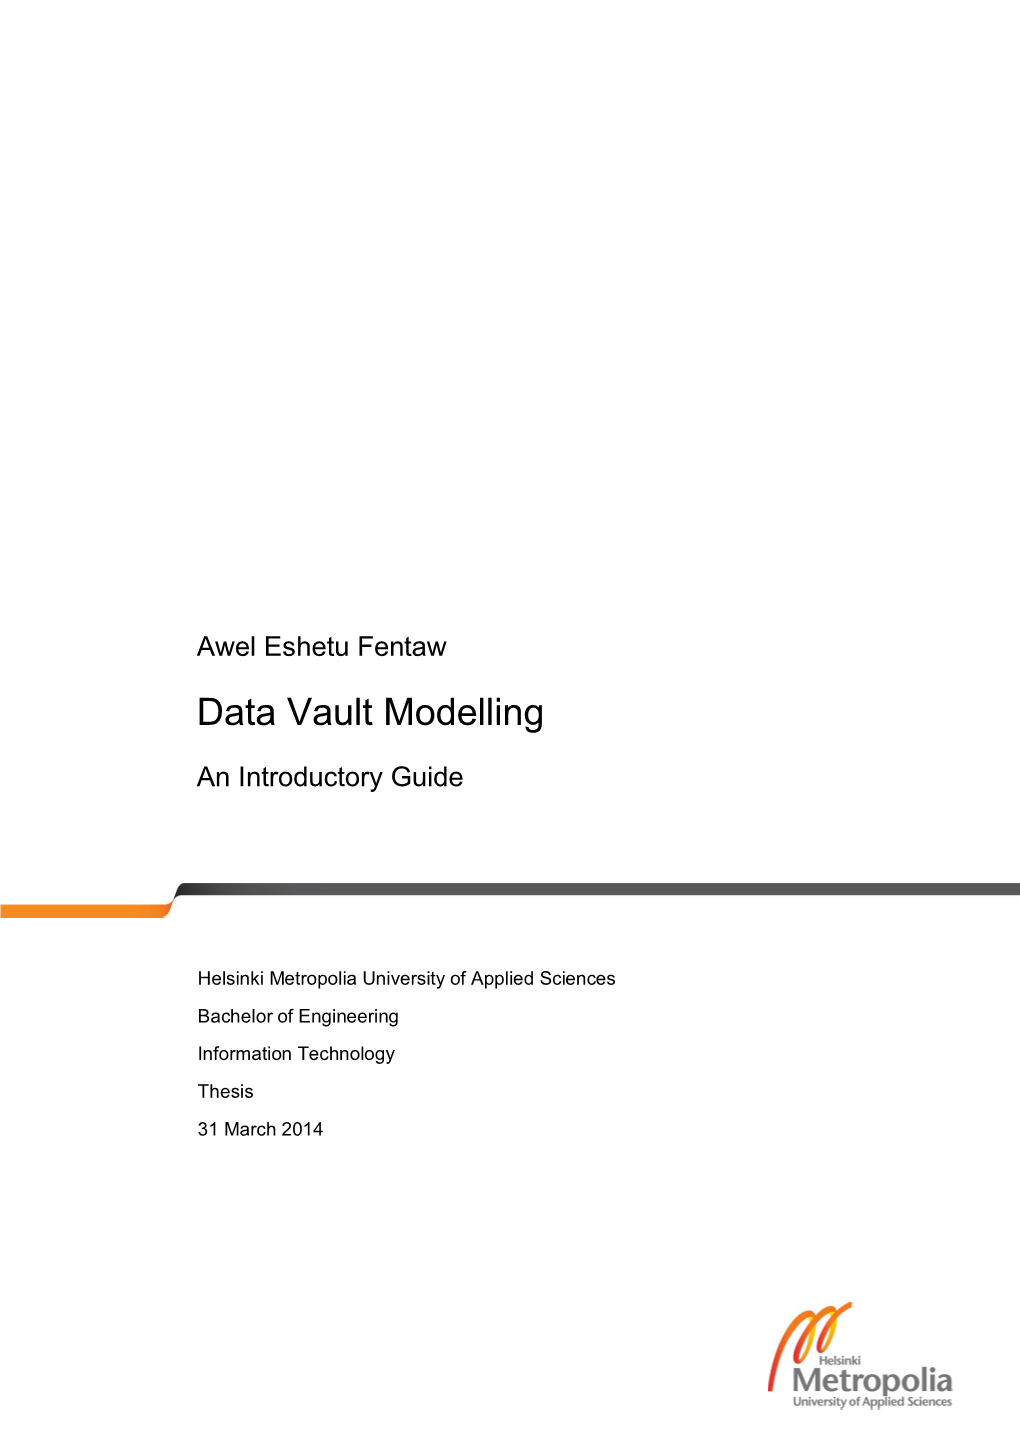 Data Vault Modelling